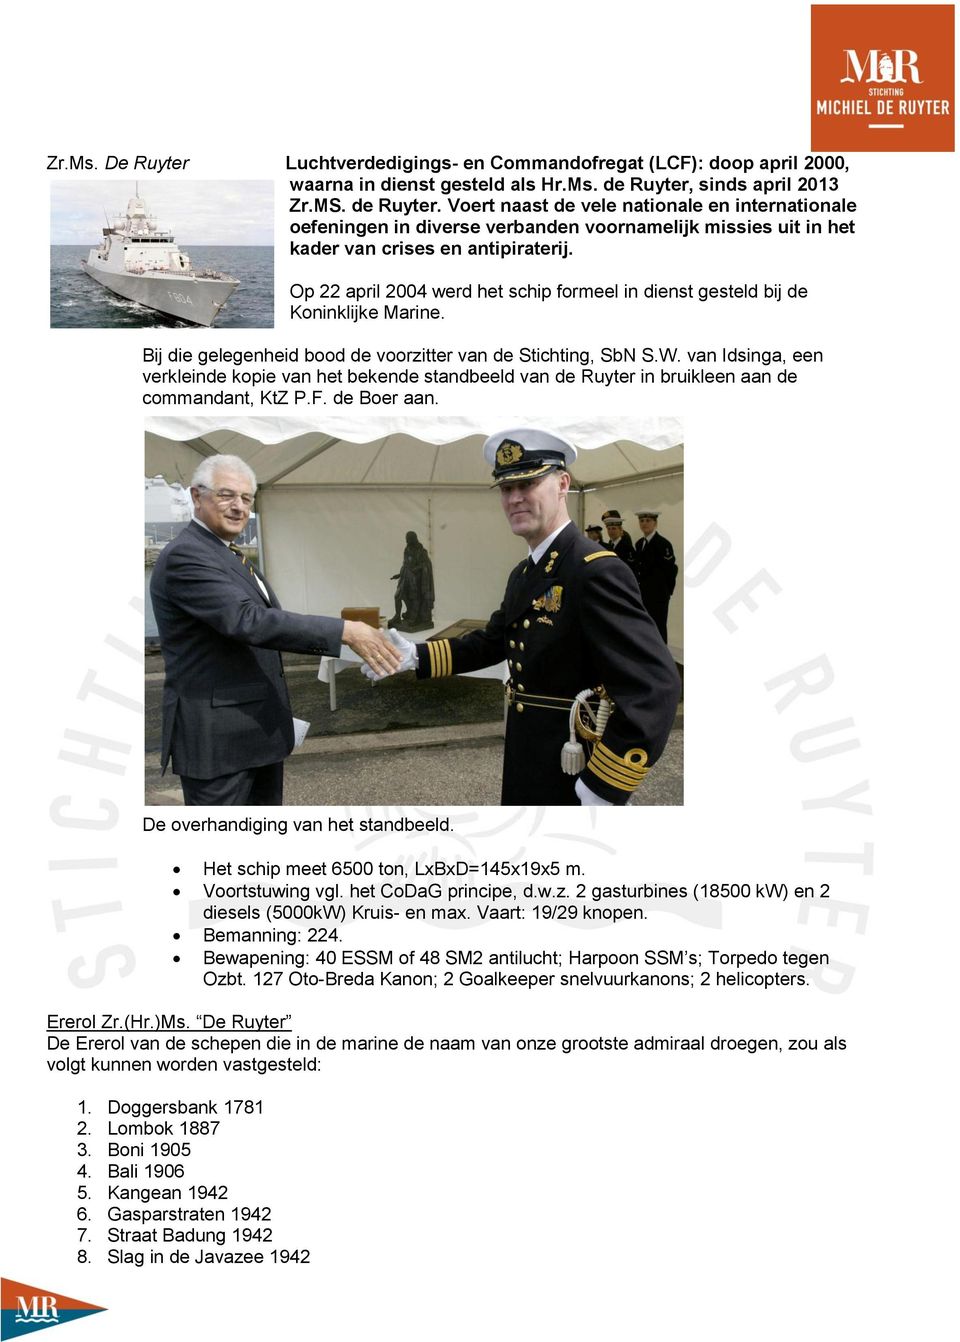 Op 22 april 2004 werd het schip formeel in dienst gesteld bij de Koninklijke Marine. Bij die gelegenheid bood de voorzitter van de Stichting, SbN S.W.